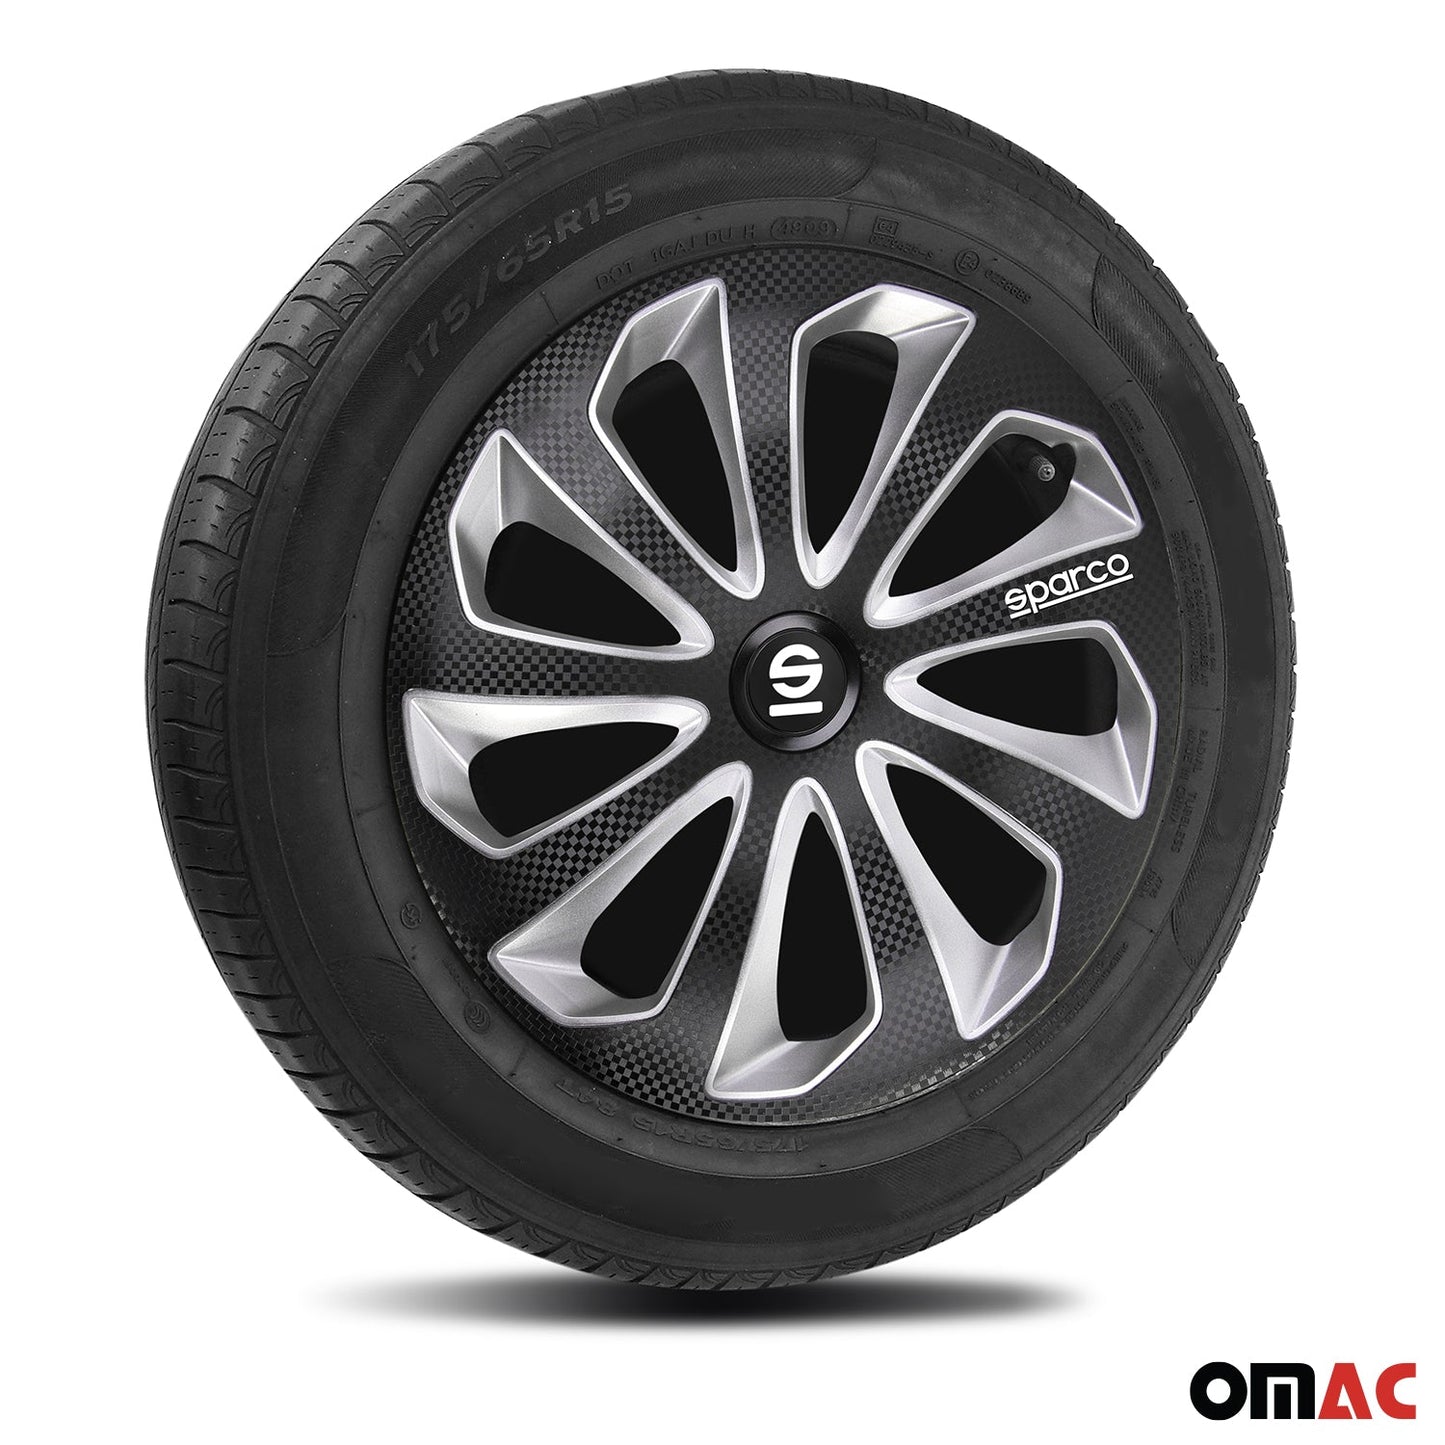 OMAC 15" Sparco Sicilia Wheel Covers Hubcaps Black Silver 4 Pcs 96SPC1575BKSVC